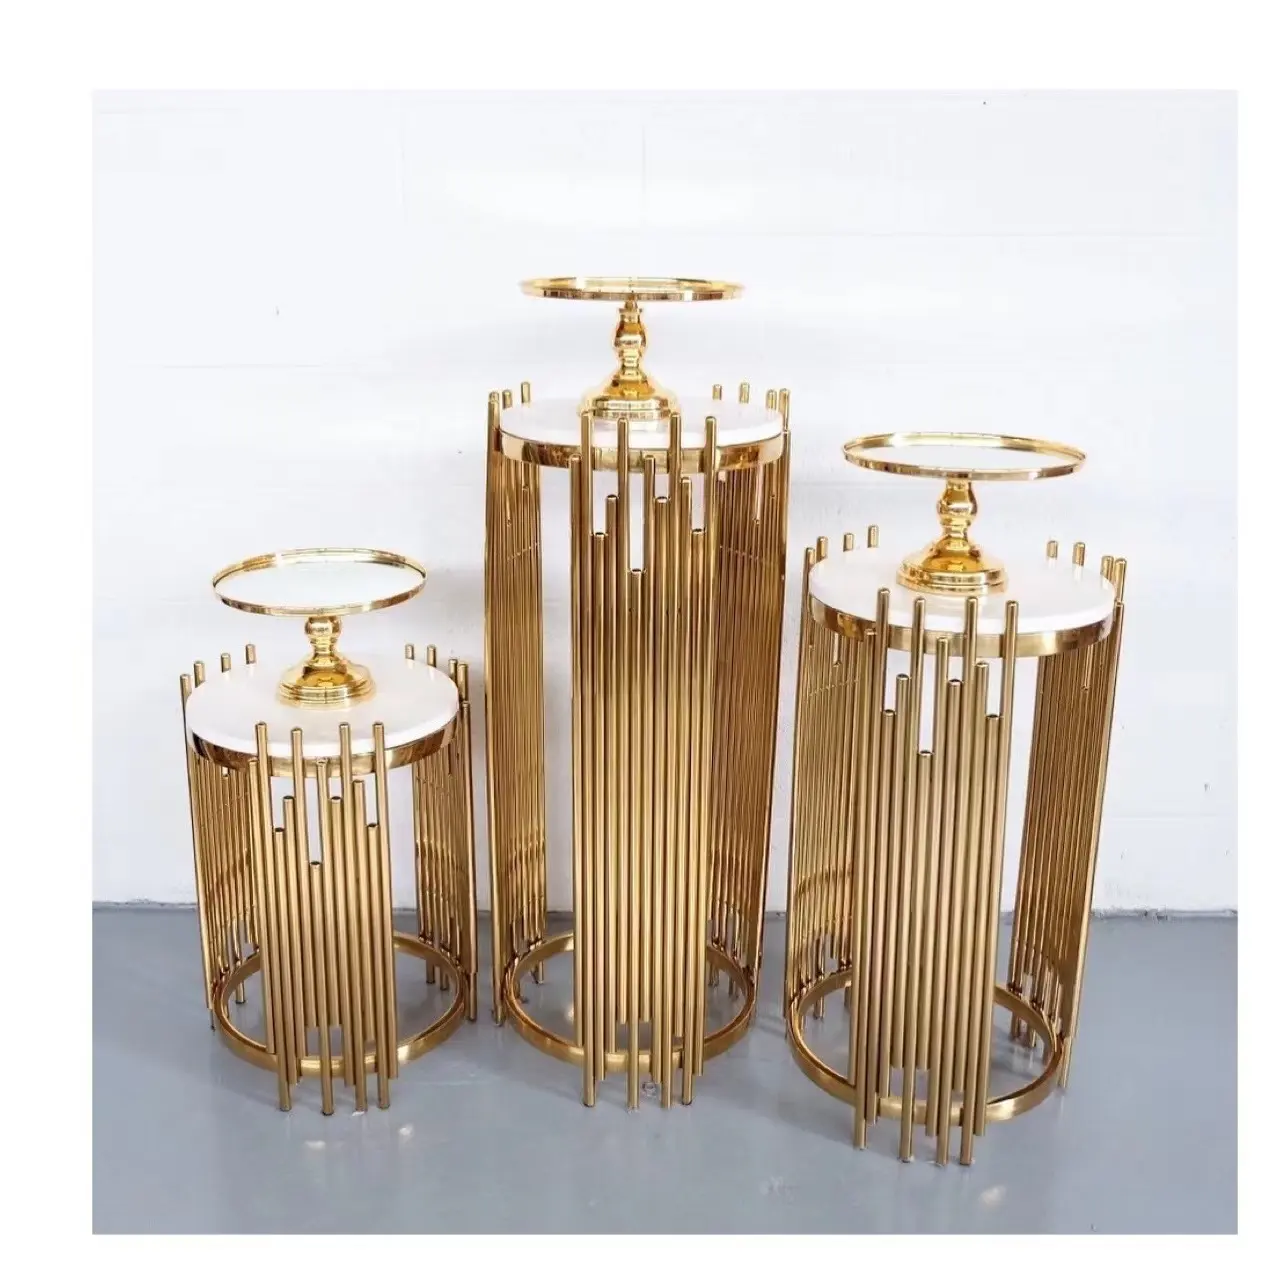 Suministros de fiesta holesale, pedestal cilíndrico de pedestal para pastel con pilares de metal dorado para decoración de bodas